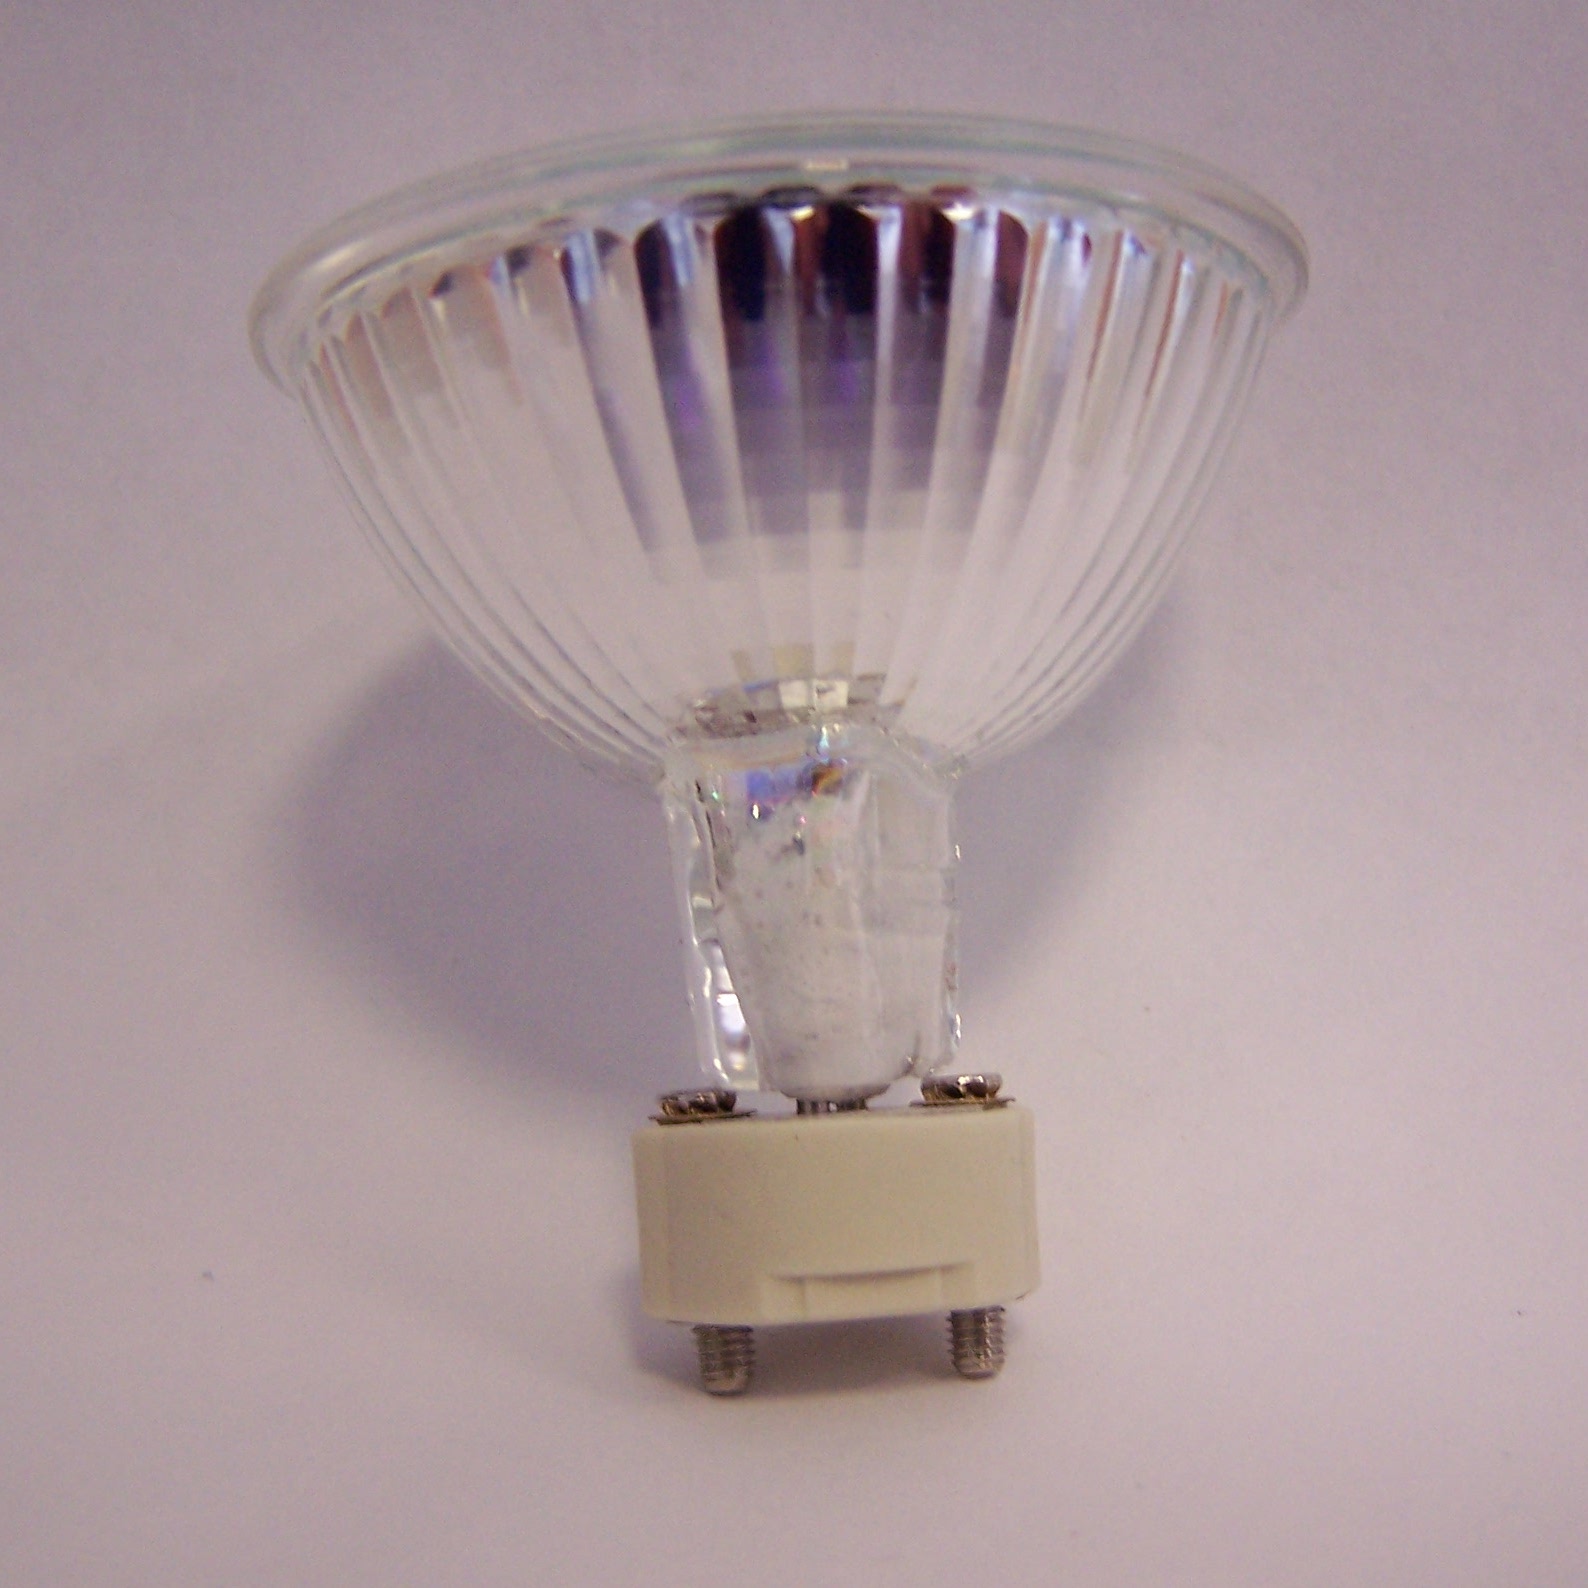 Spectroline Optimax OPX-450 aktinische 450 nm Blaulicht-Taschenlampe